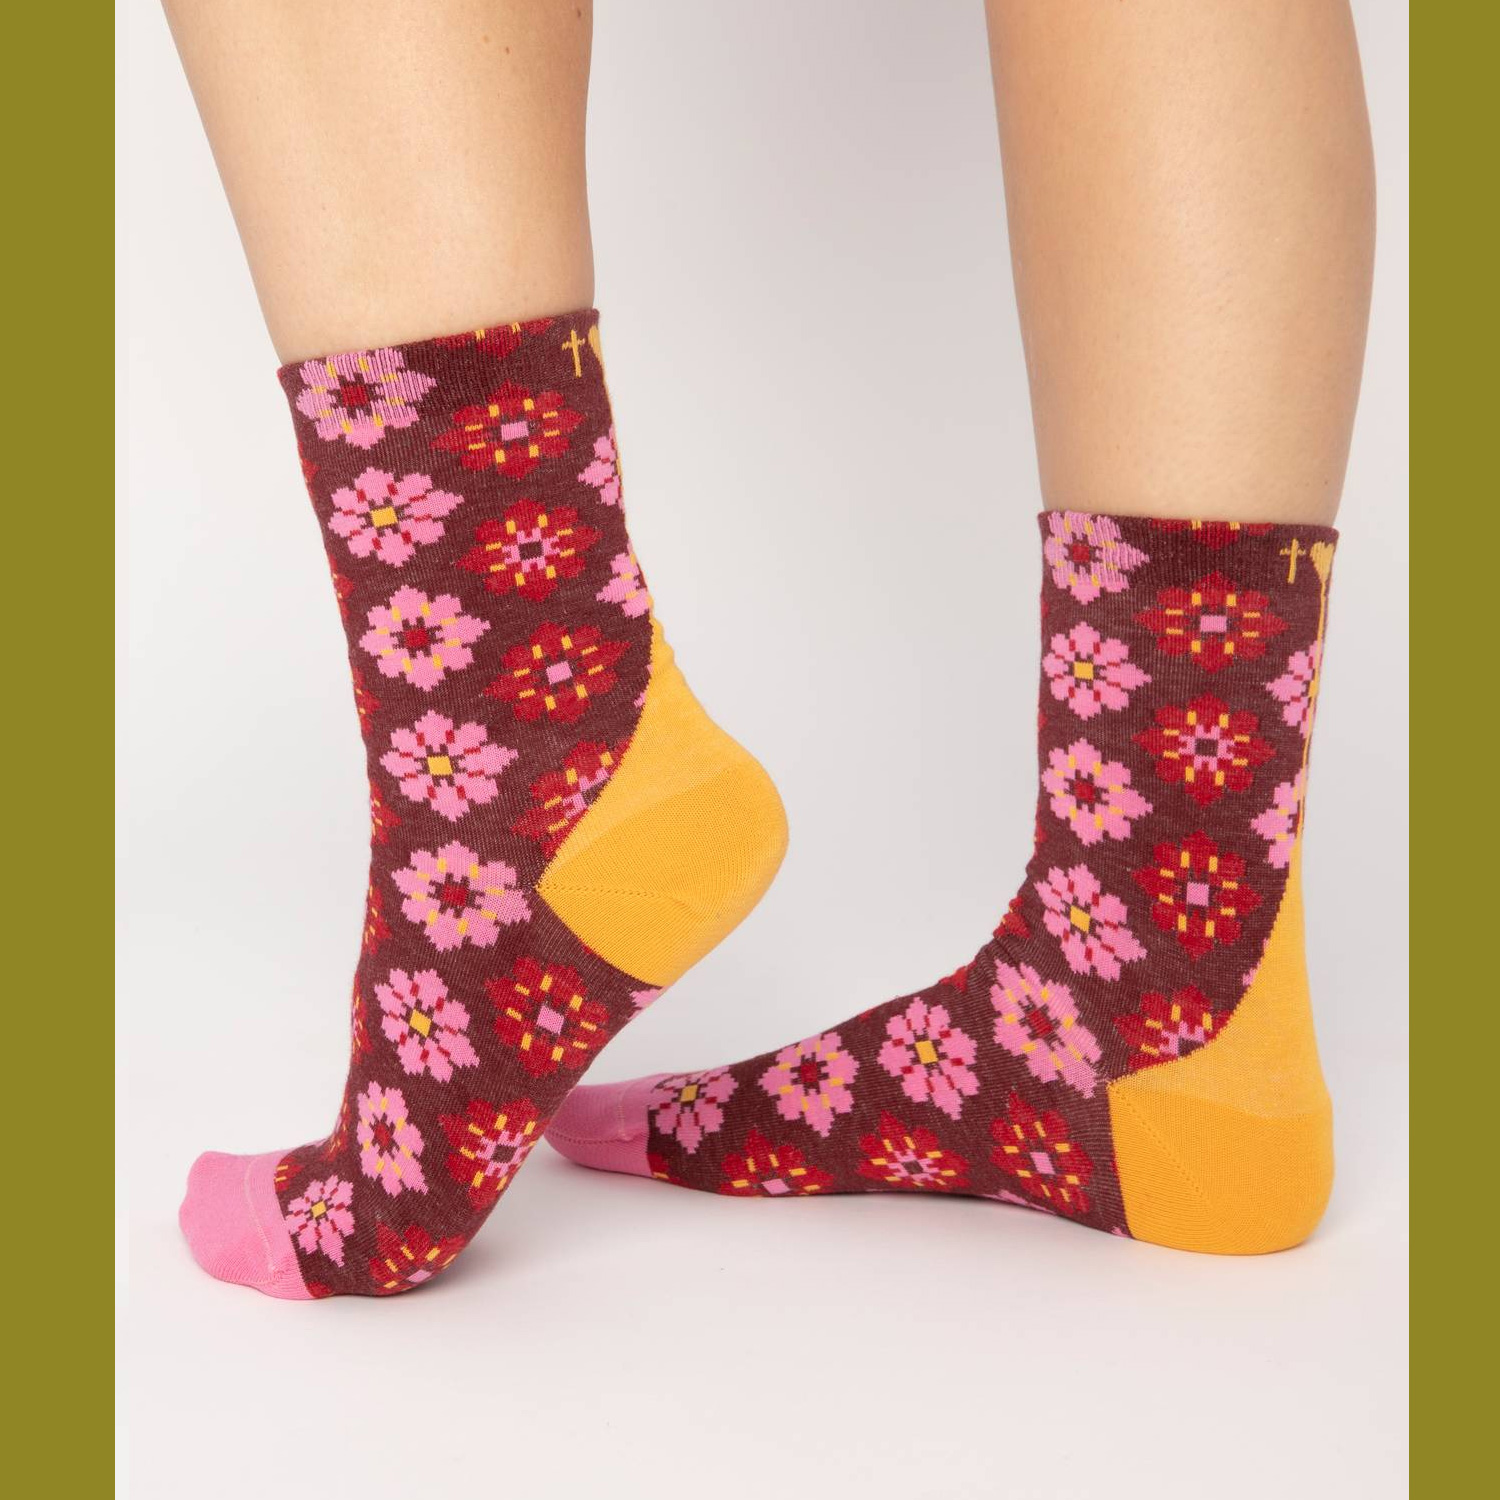  Blutsgeschwister Socken sensational steps , One Size ( ca. 38 - 40 ),walking on flowers